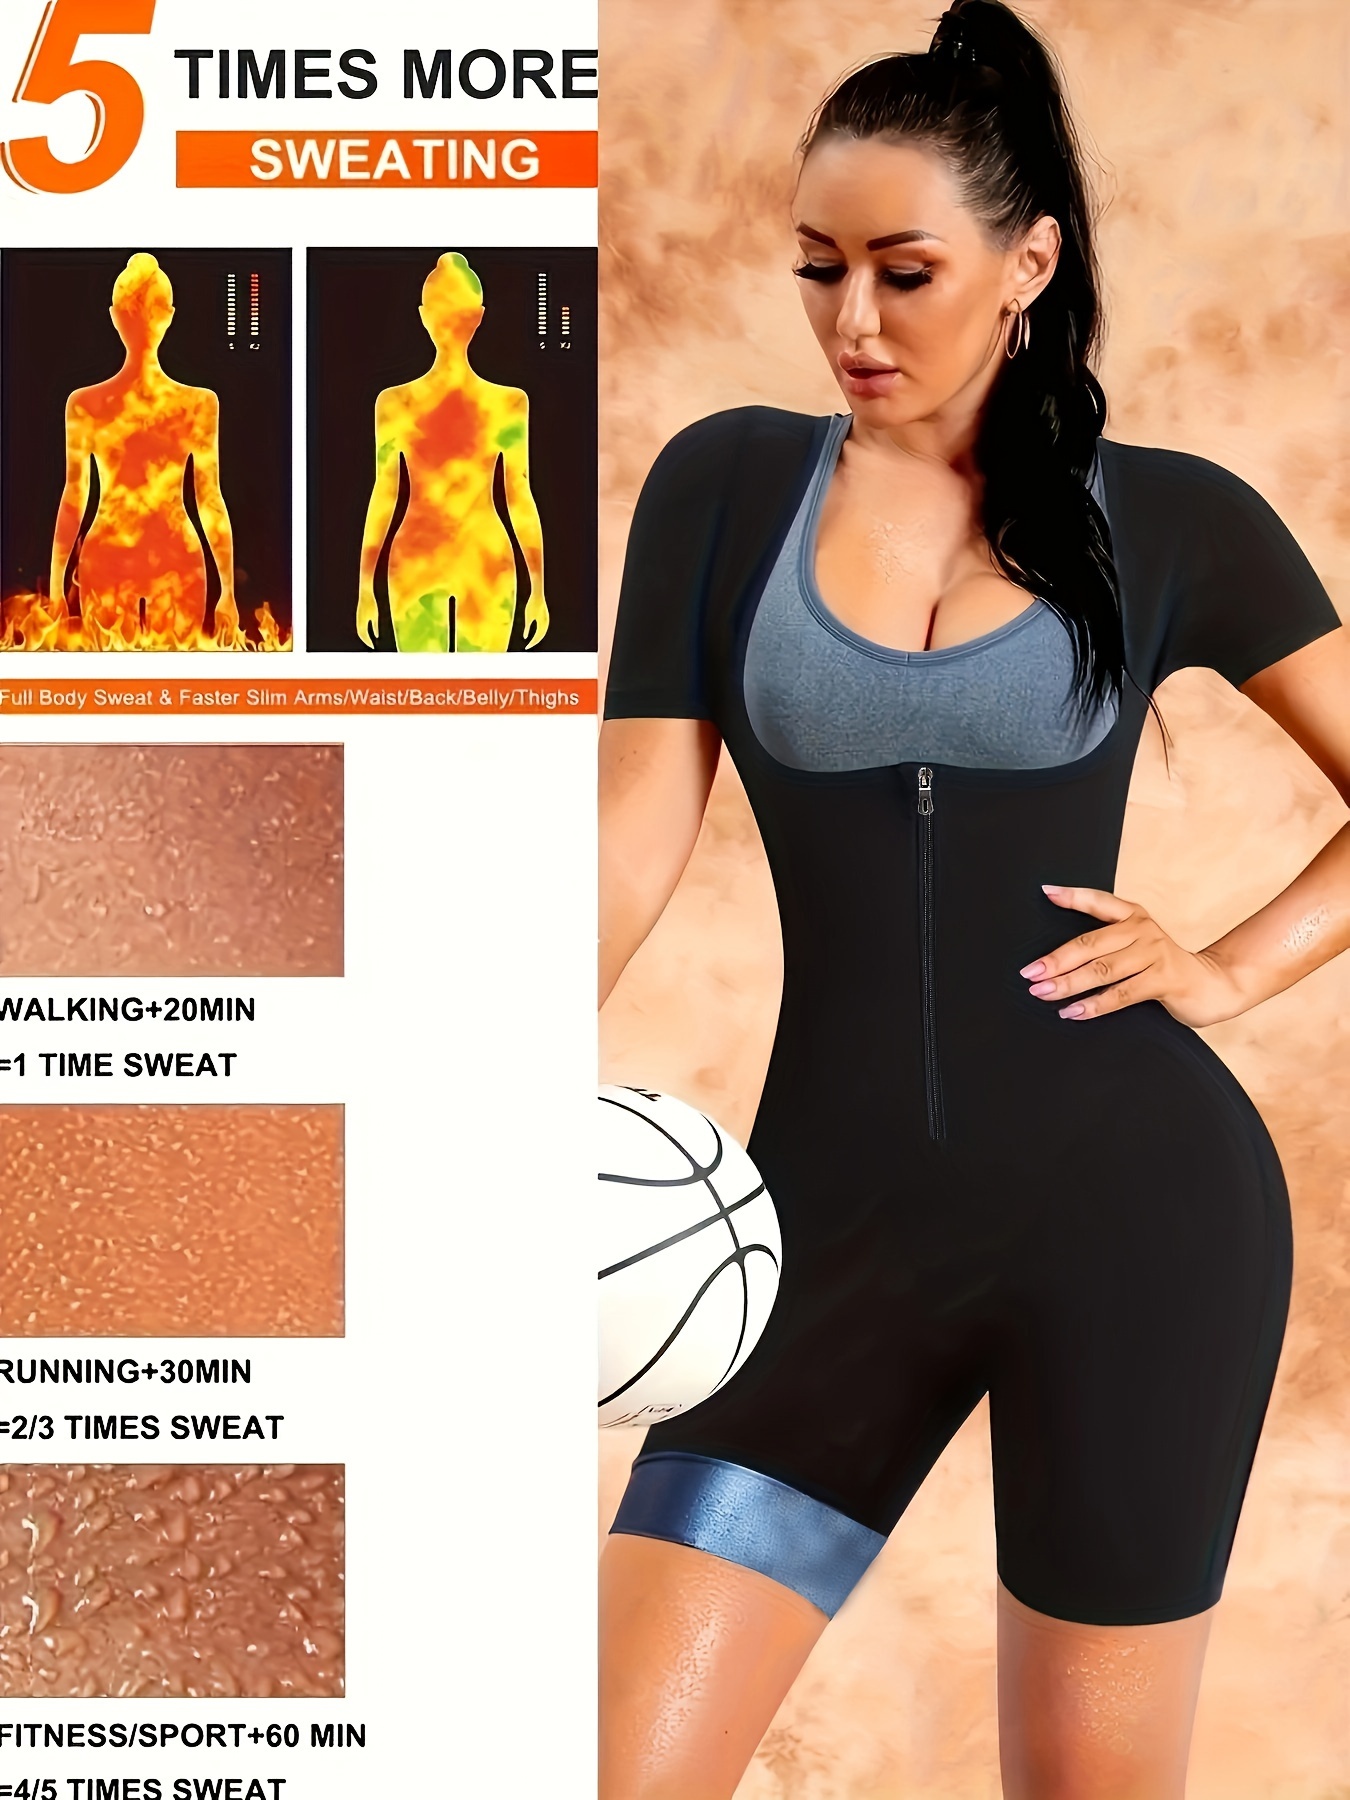 Fashion Neoprene Suit For Women Full Body Shaper Sport Sweat